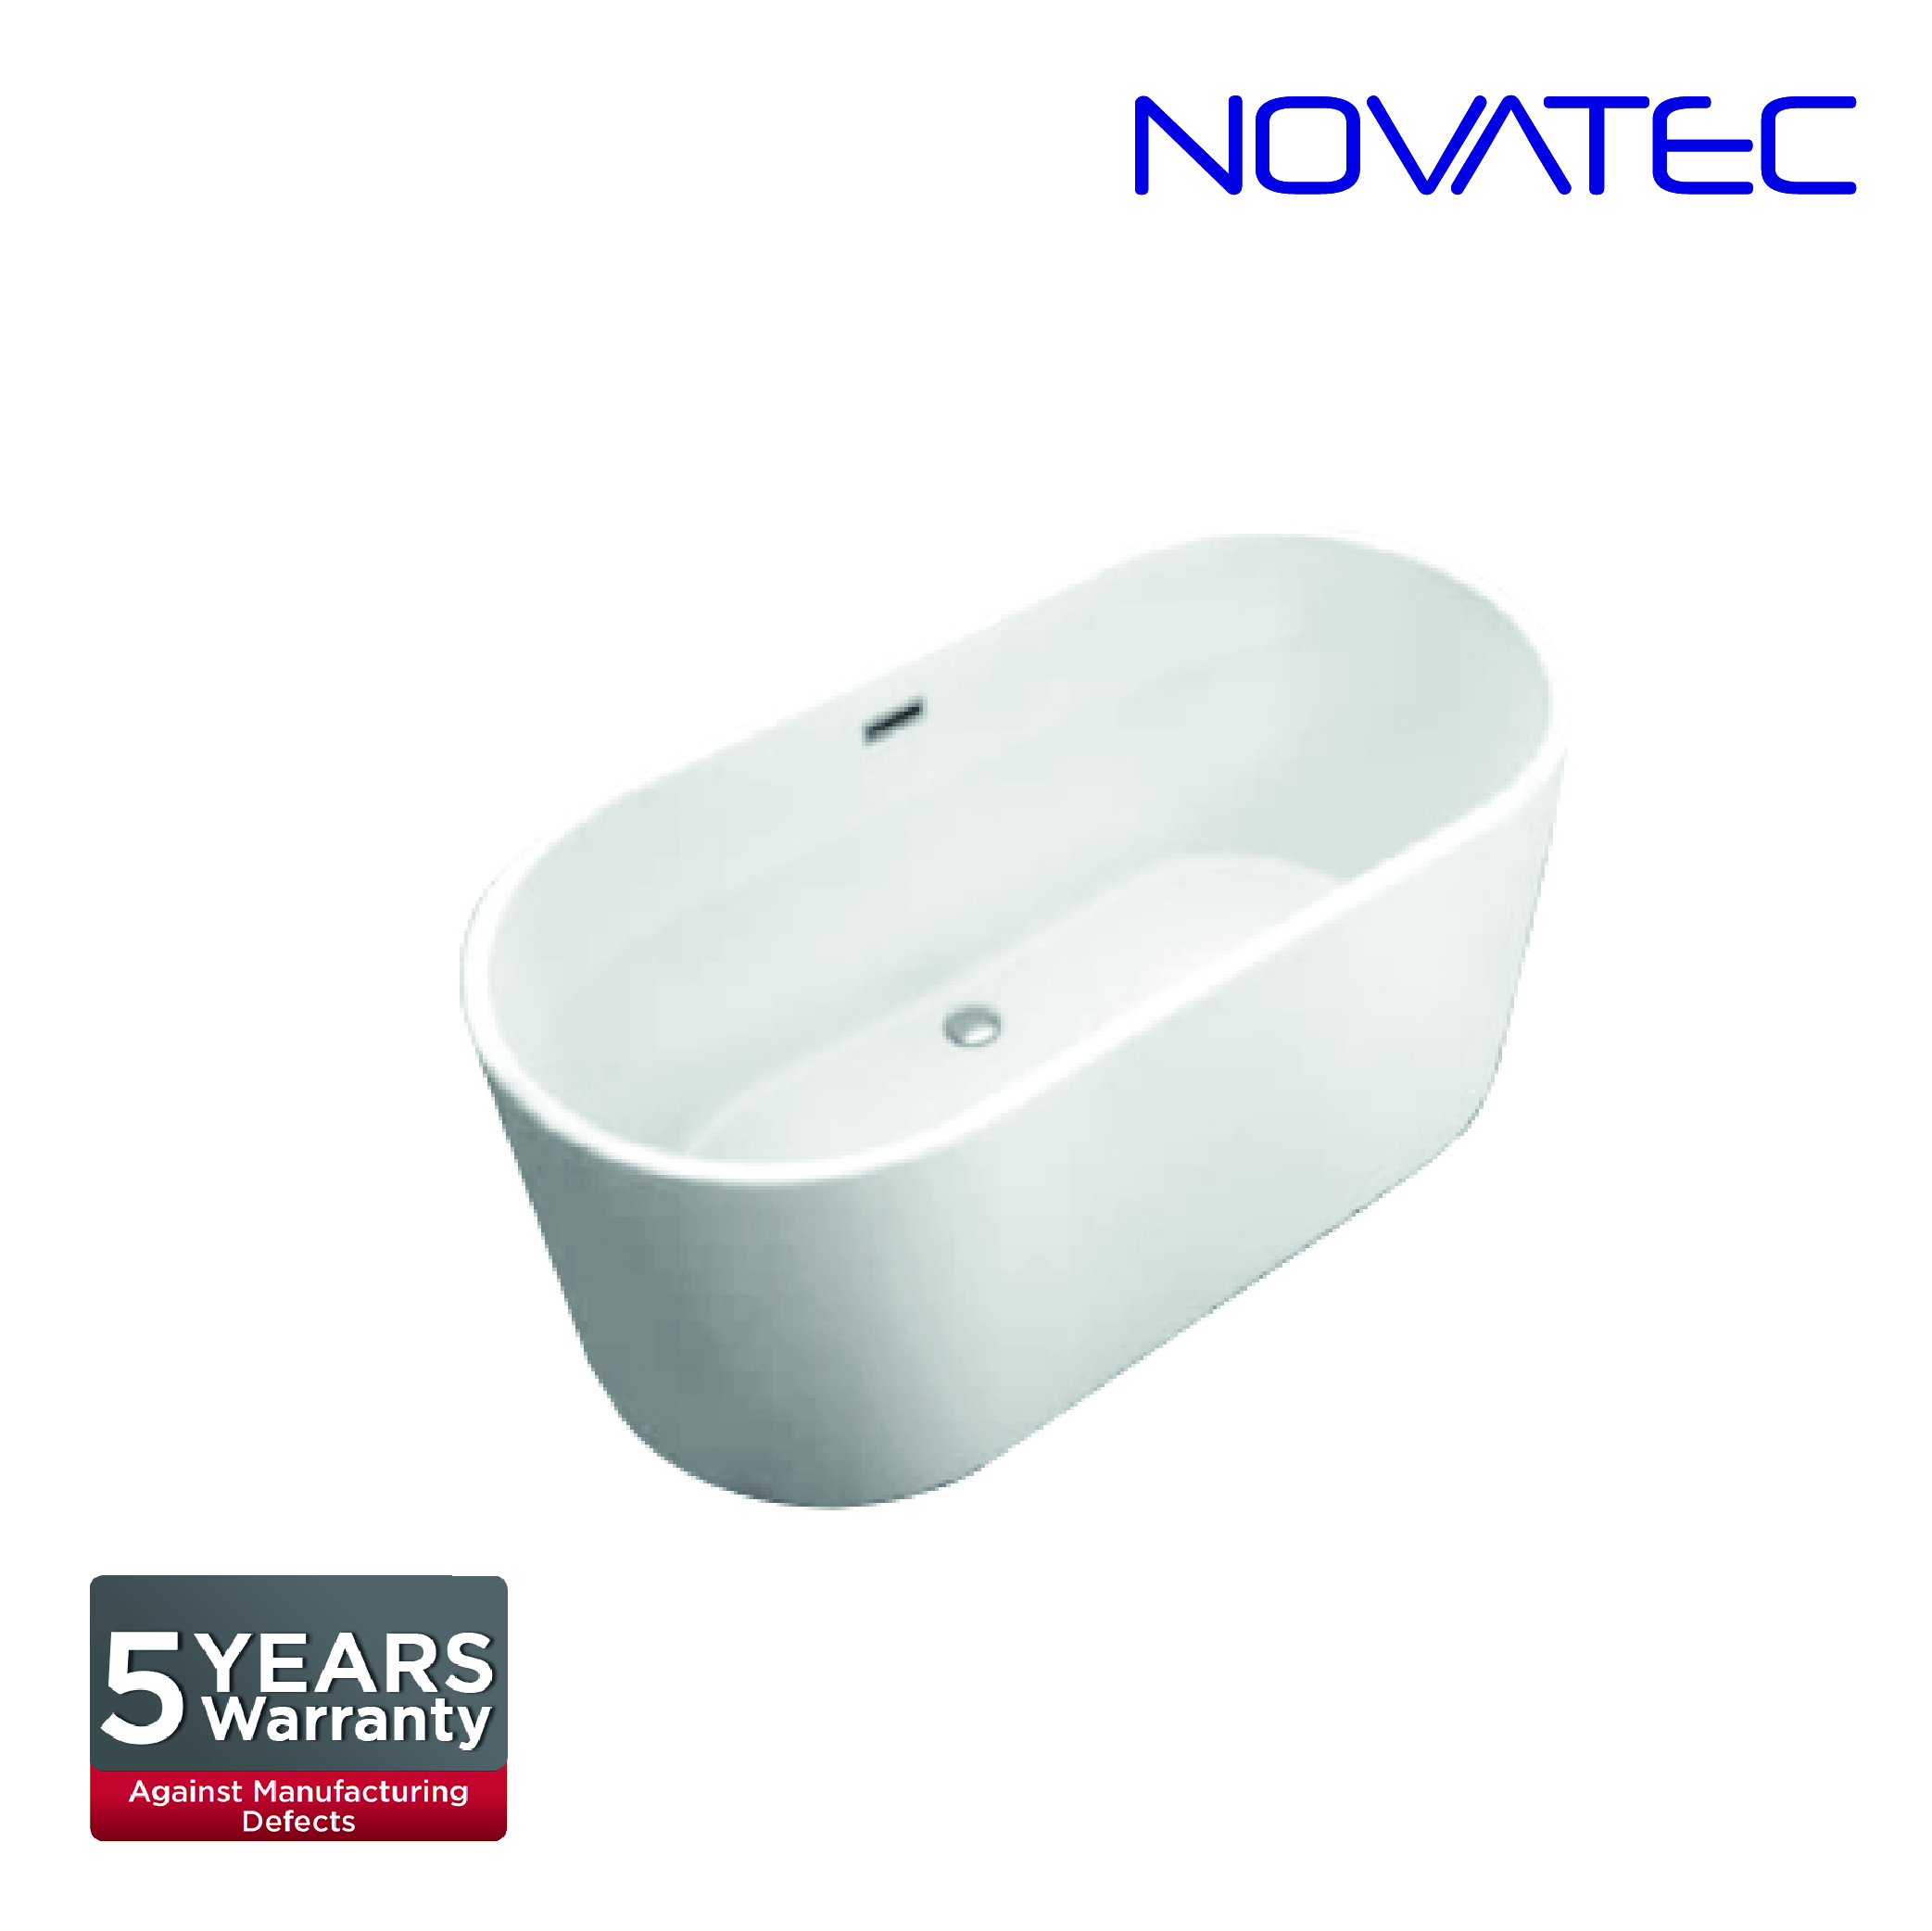 Novatec SW Madrid Bath Tub BT 160015B